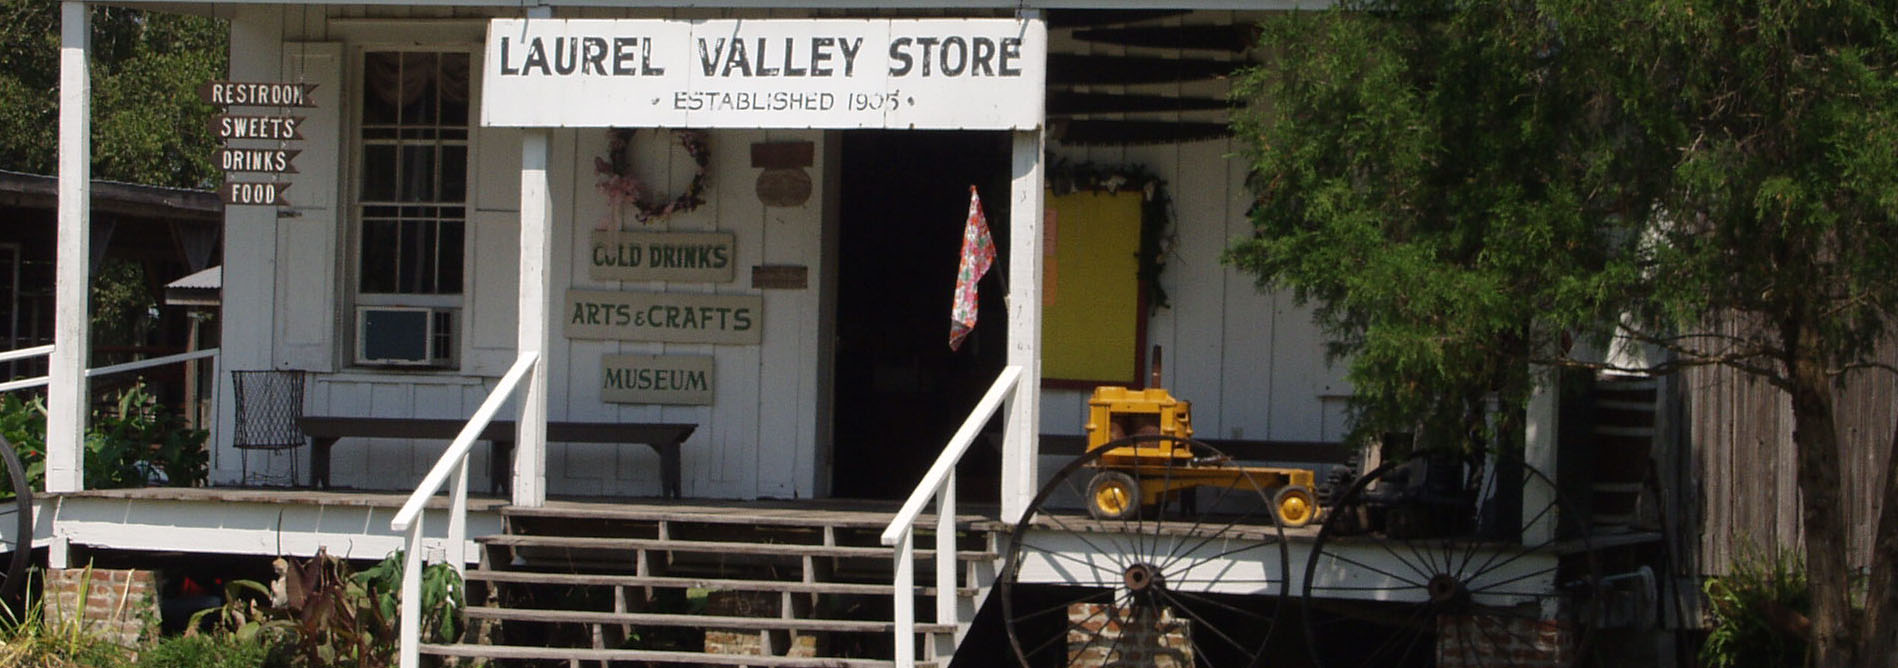 Laurel Valley Store